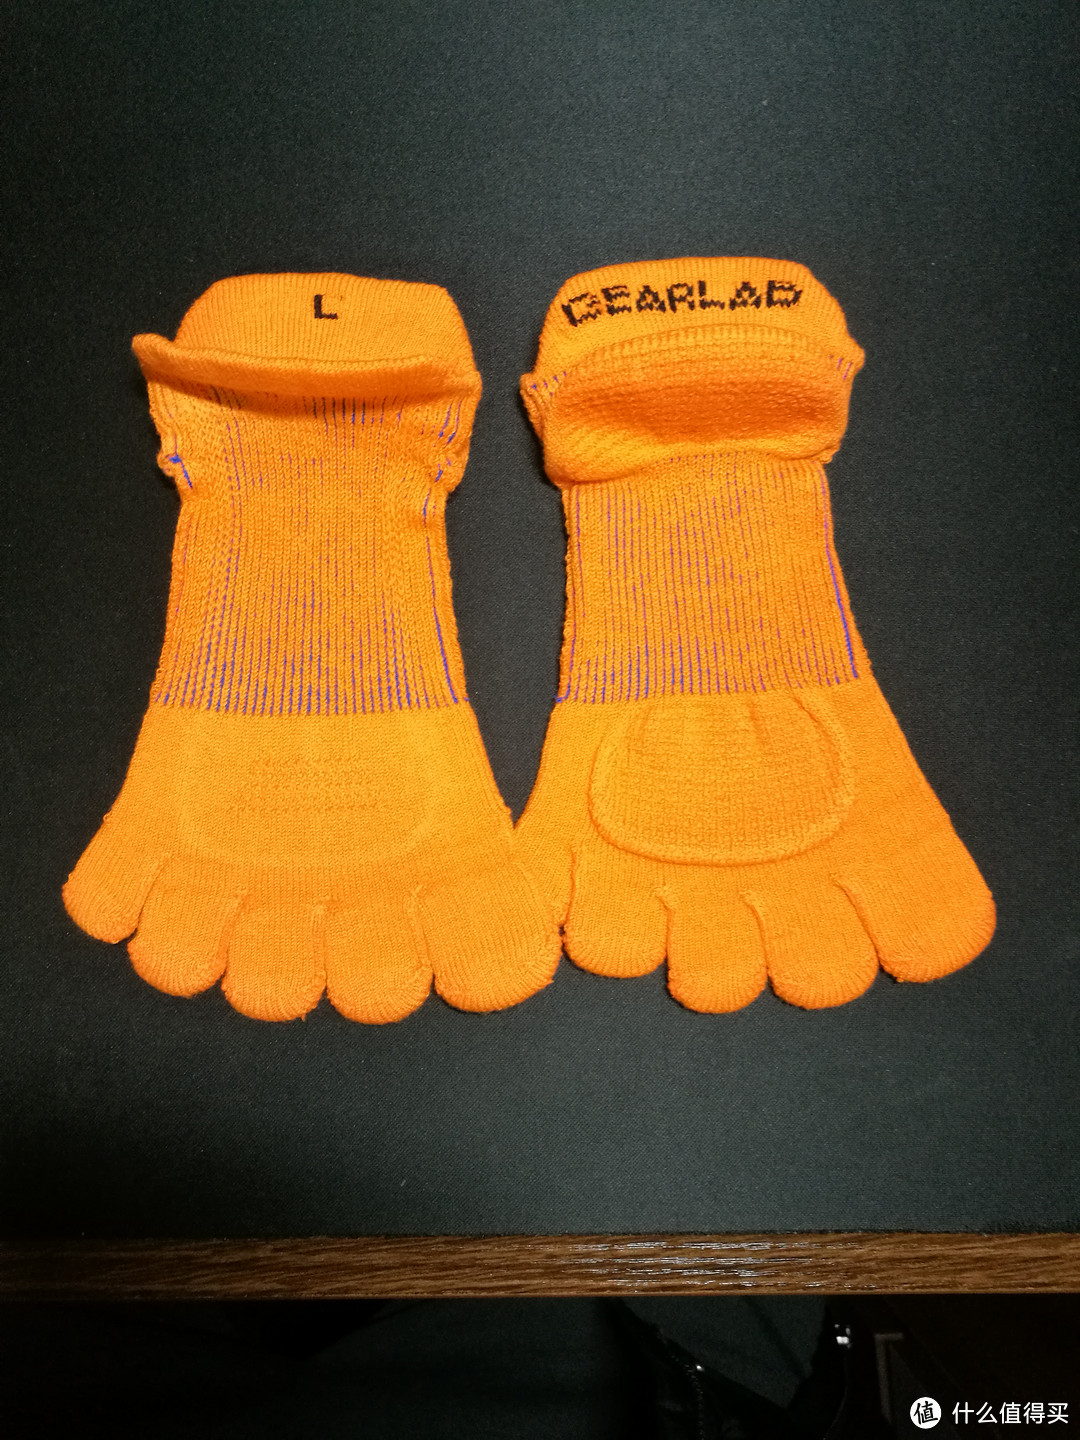 我所有的跑步袜之一：评测GEARLAB燃烧装备实验室3D压力五指袜2.0